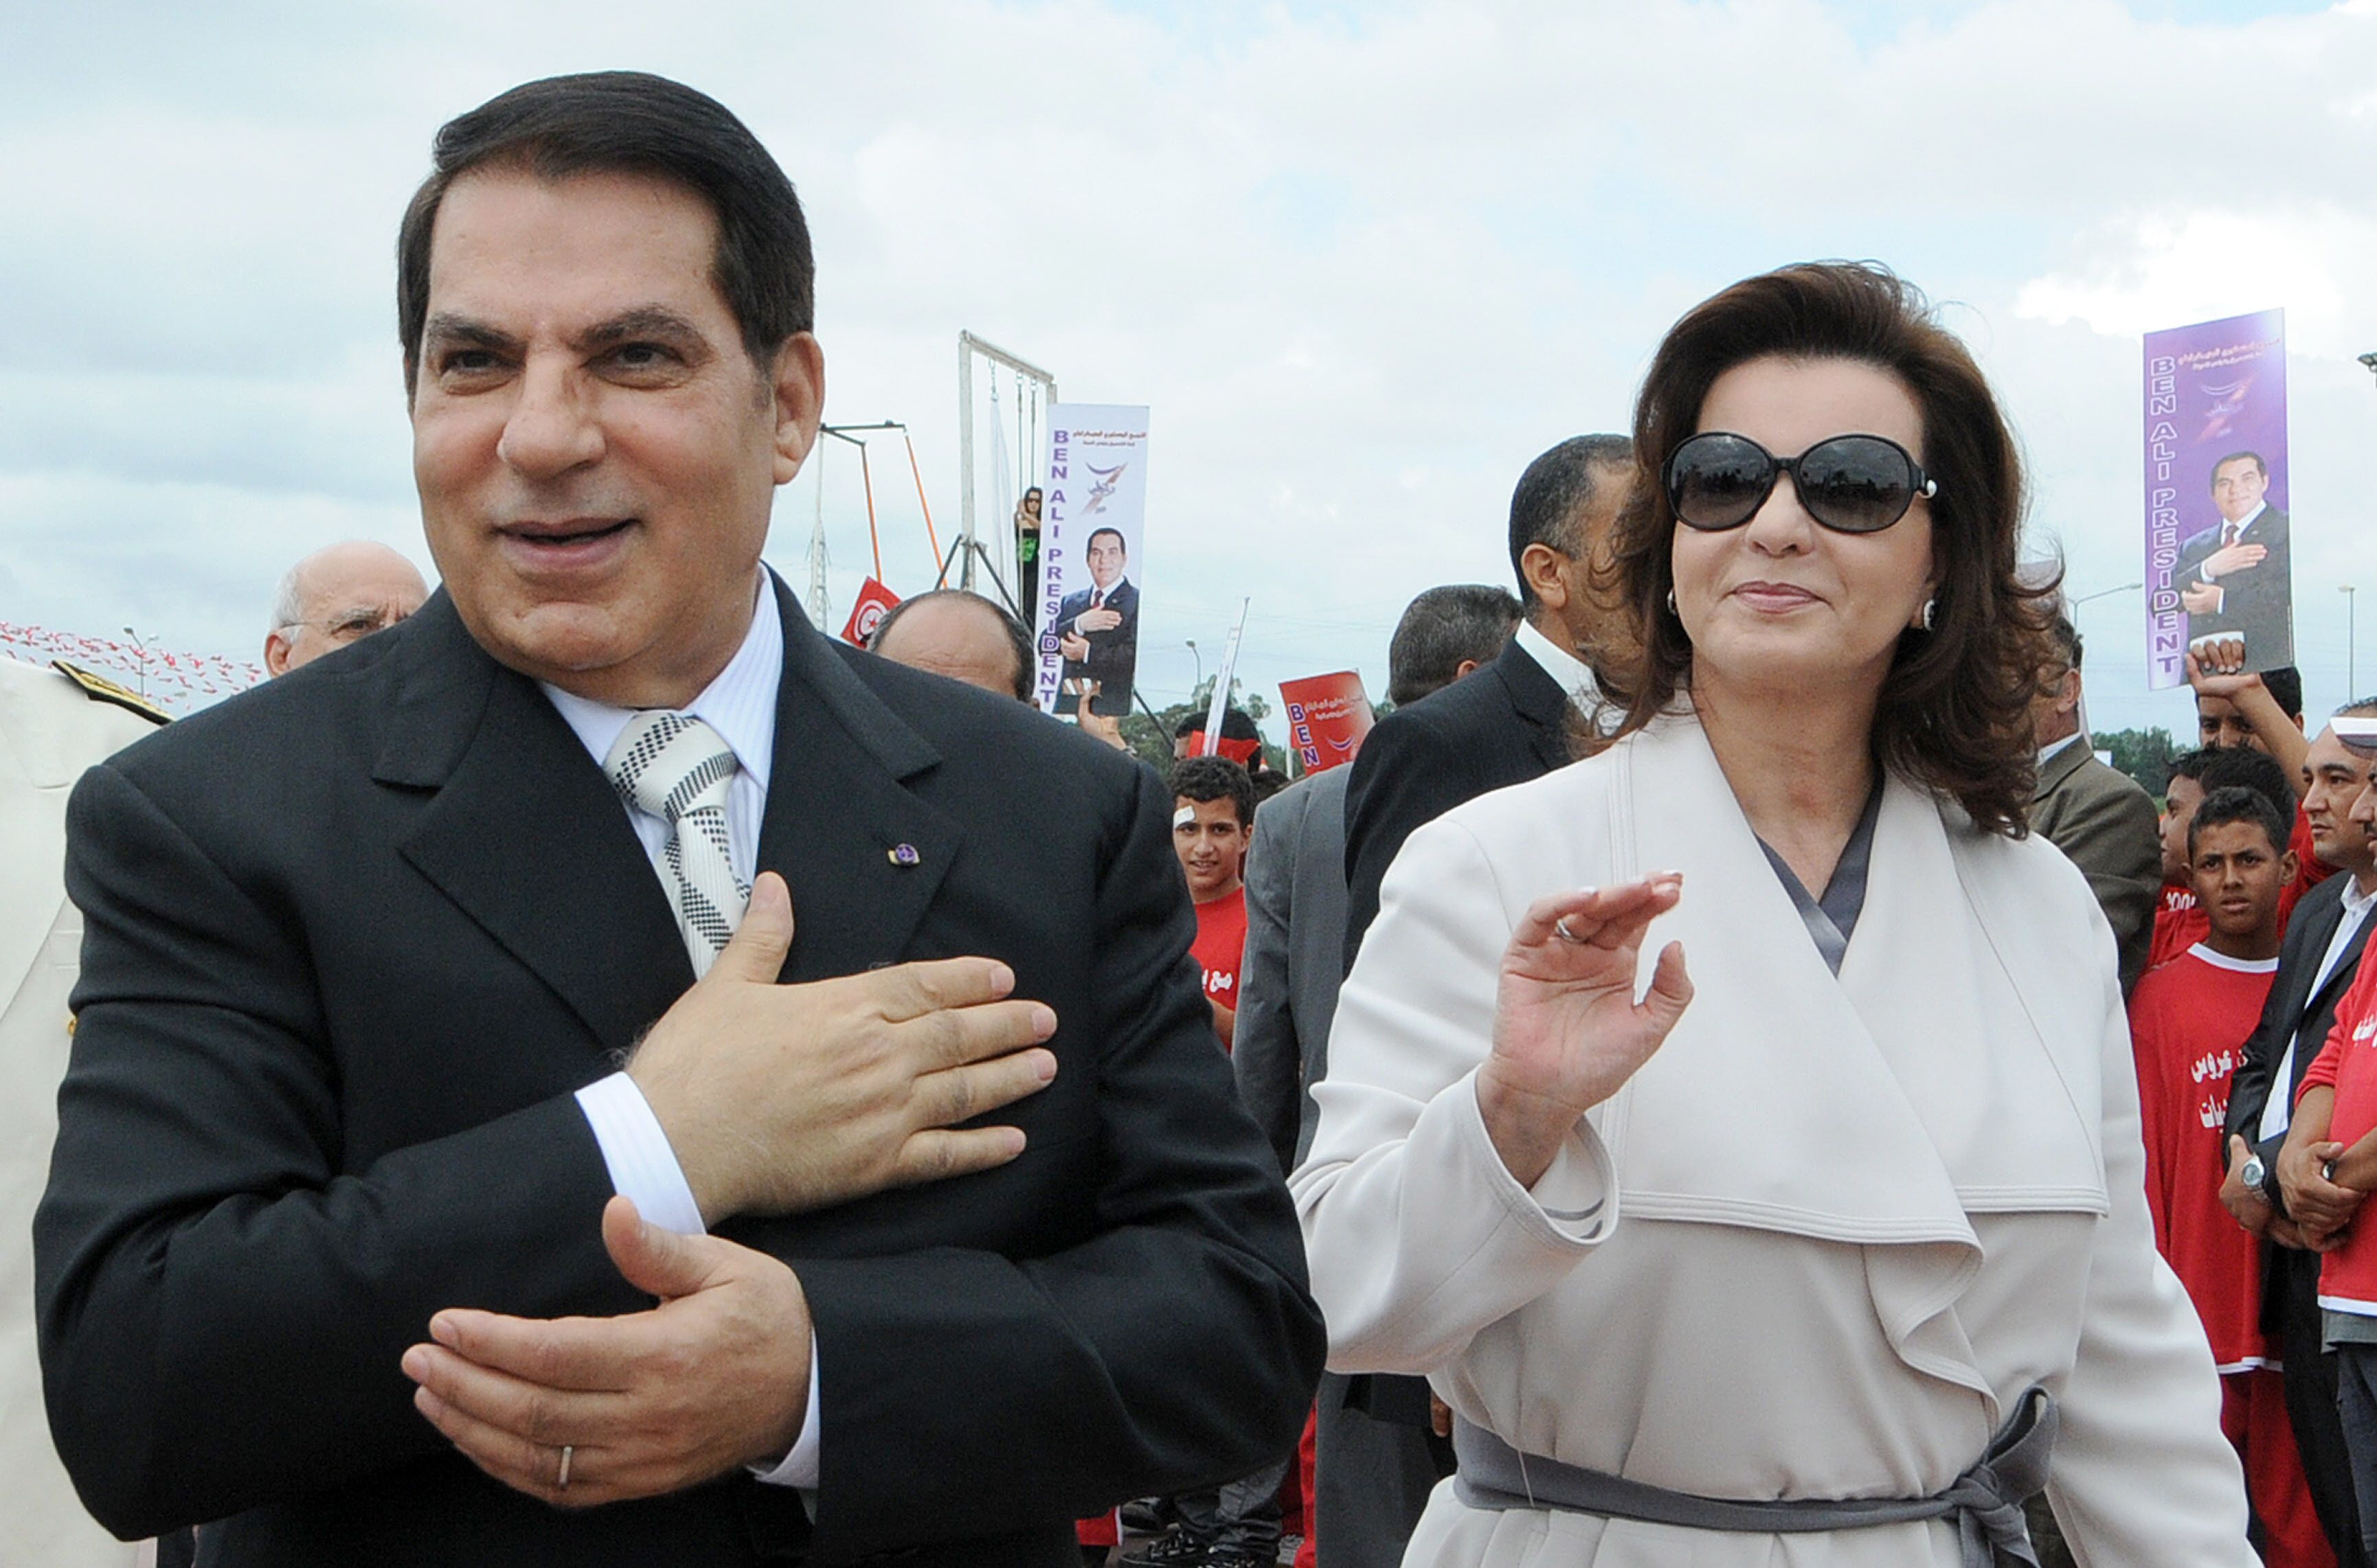 S'élevant à environ 60 millions de francs suisses (55 millions d'euros), les avoirs en Suisse de l'ex-président tunisien resteront également gelés un an de plus afin d'accorder plus de temps aux enquêtes pénales en cours et de soutenir la coopération judiciaire.